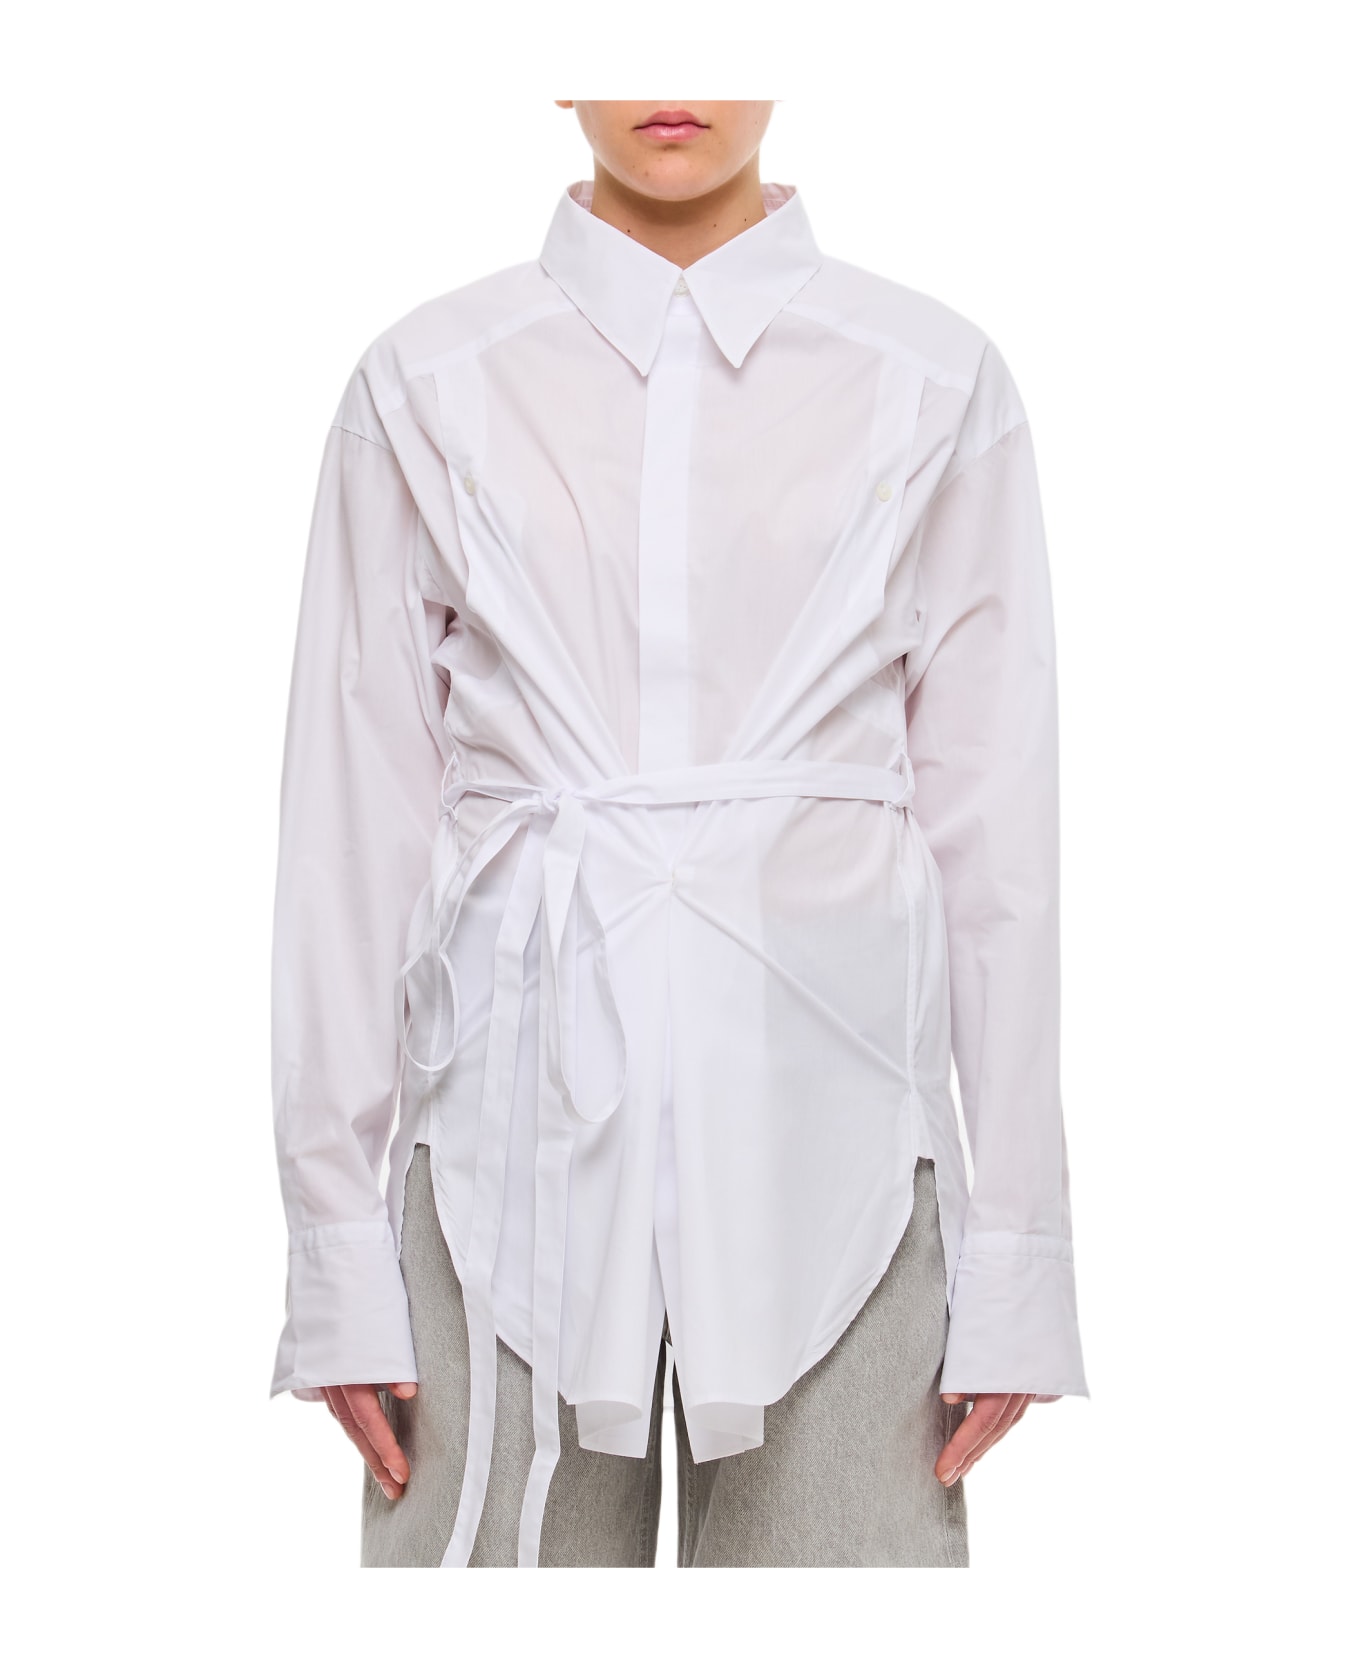 Setchu Geisha Shirt - White ブラウス